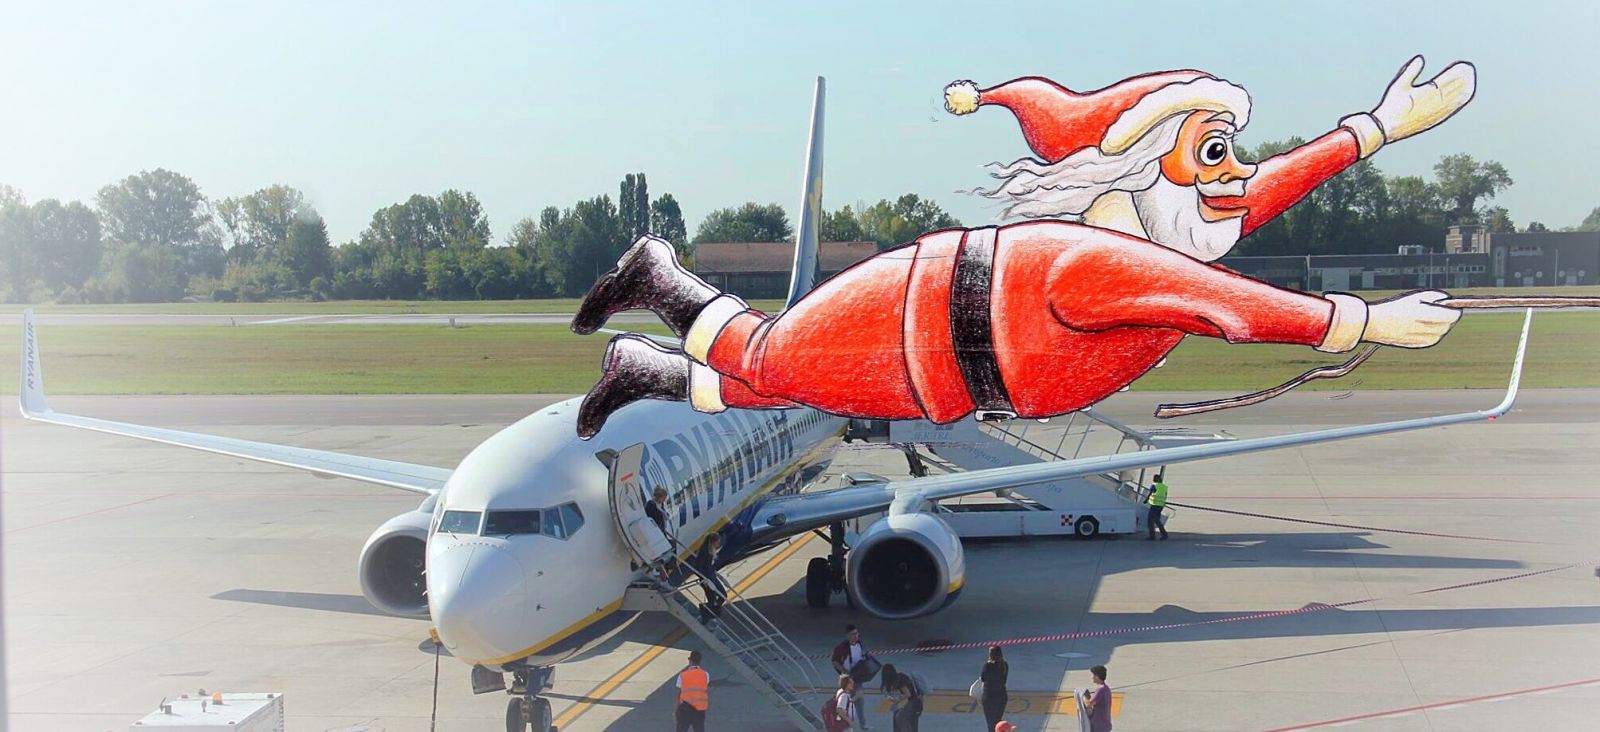 Gert de Goede kerstman vliegtuig vliegveld vliegen illustratie cartoon vrolijk voorbij